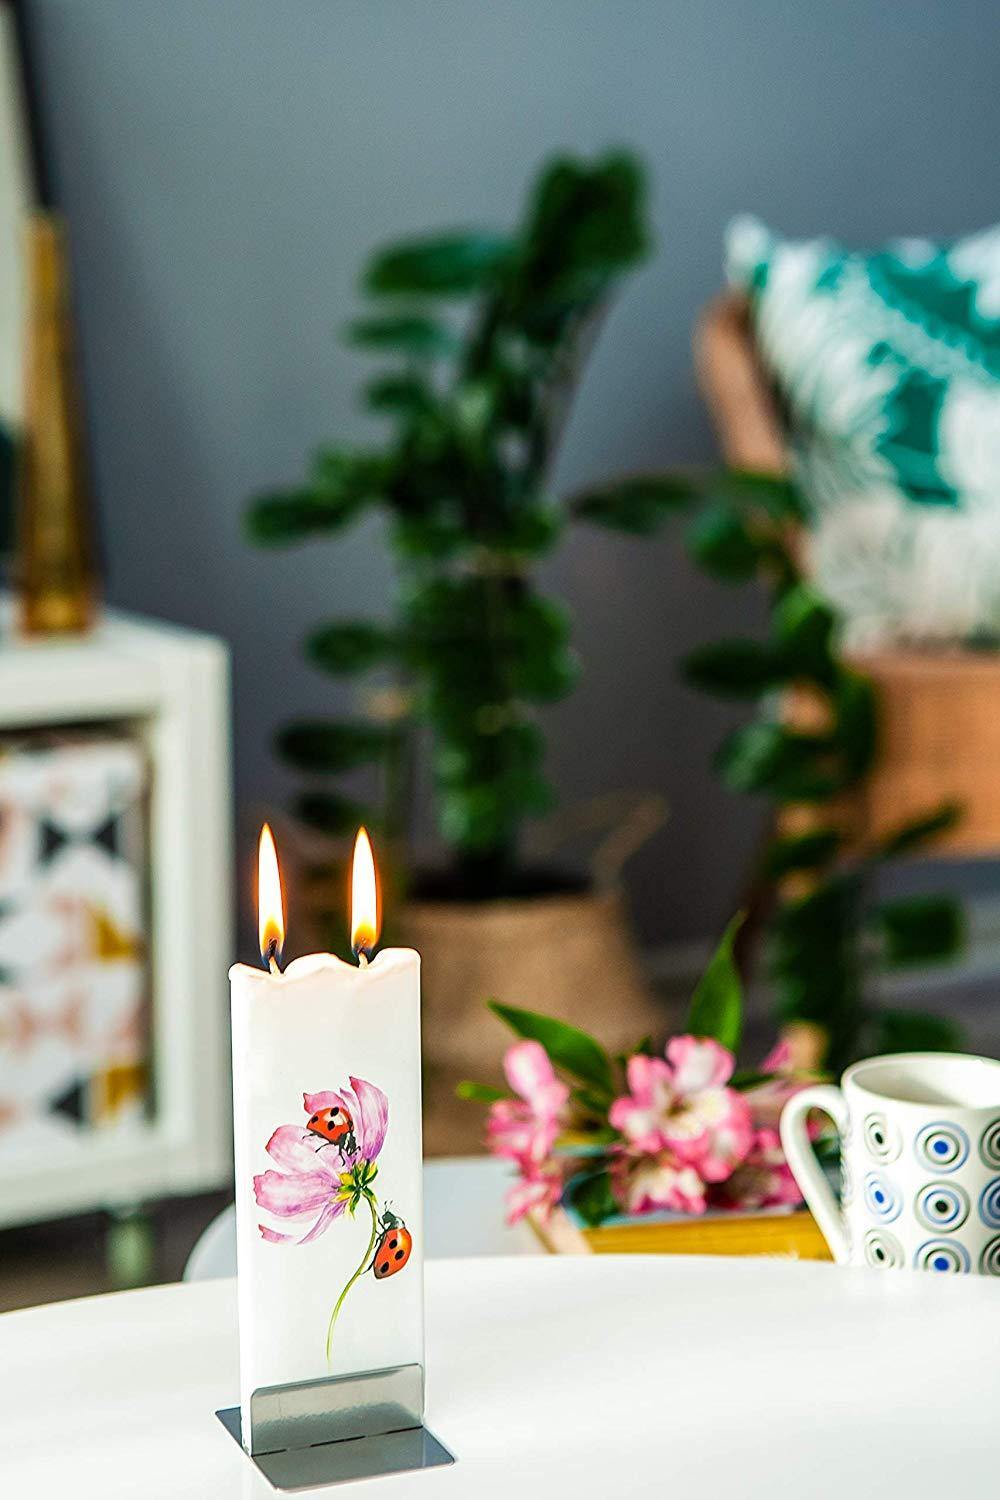 Ladybugs on a flower - Designer Candle Candles Foxyavenue UK